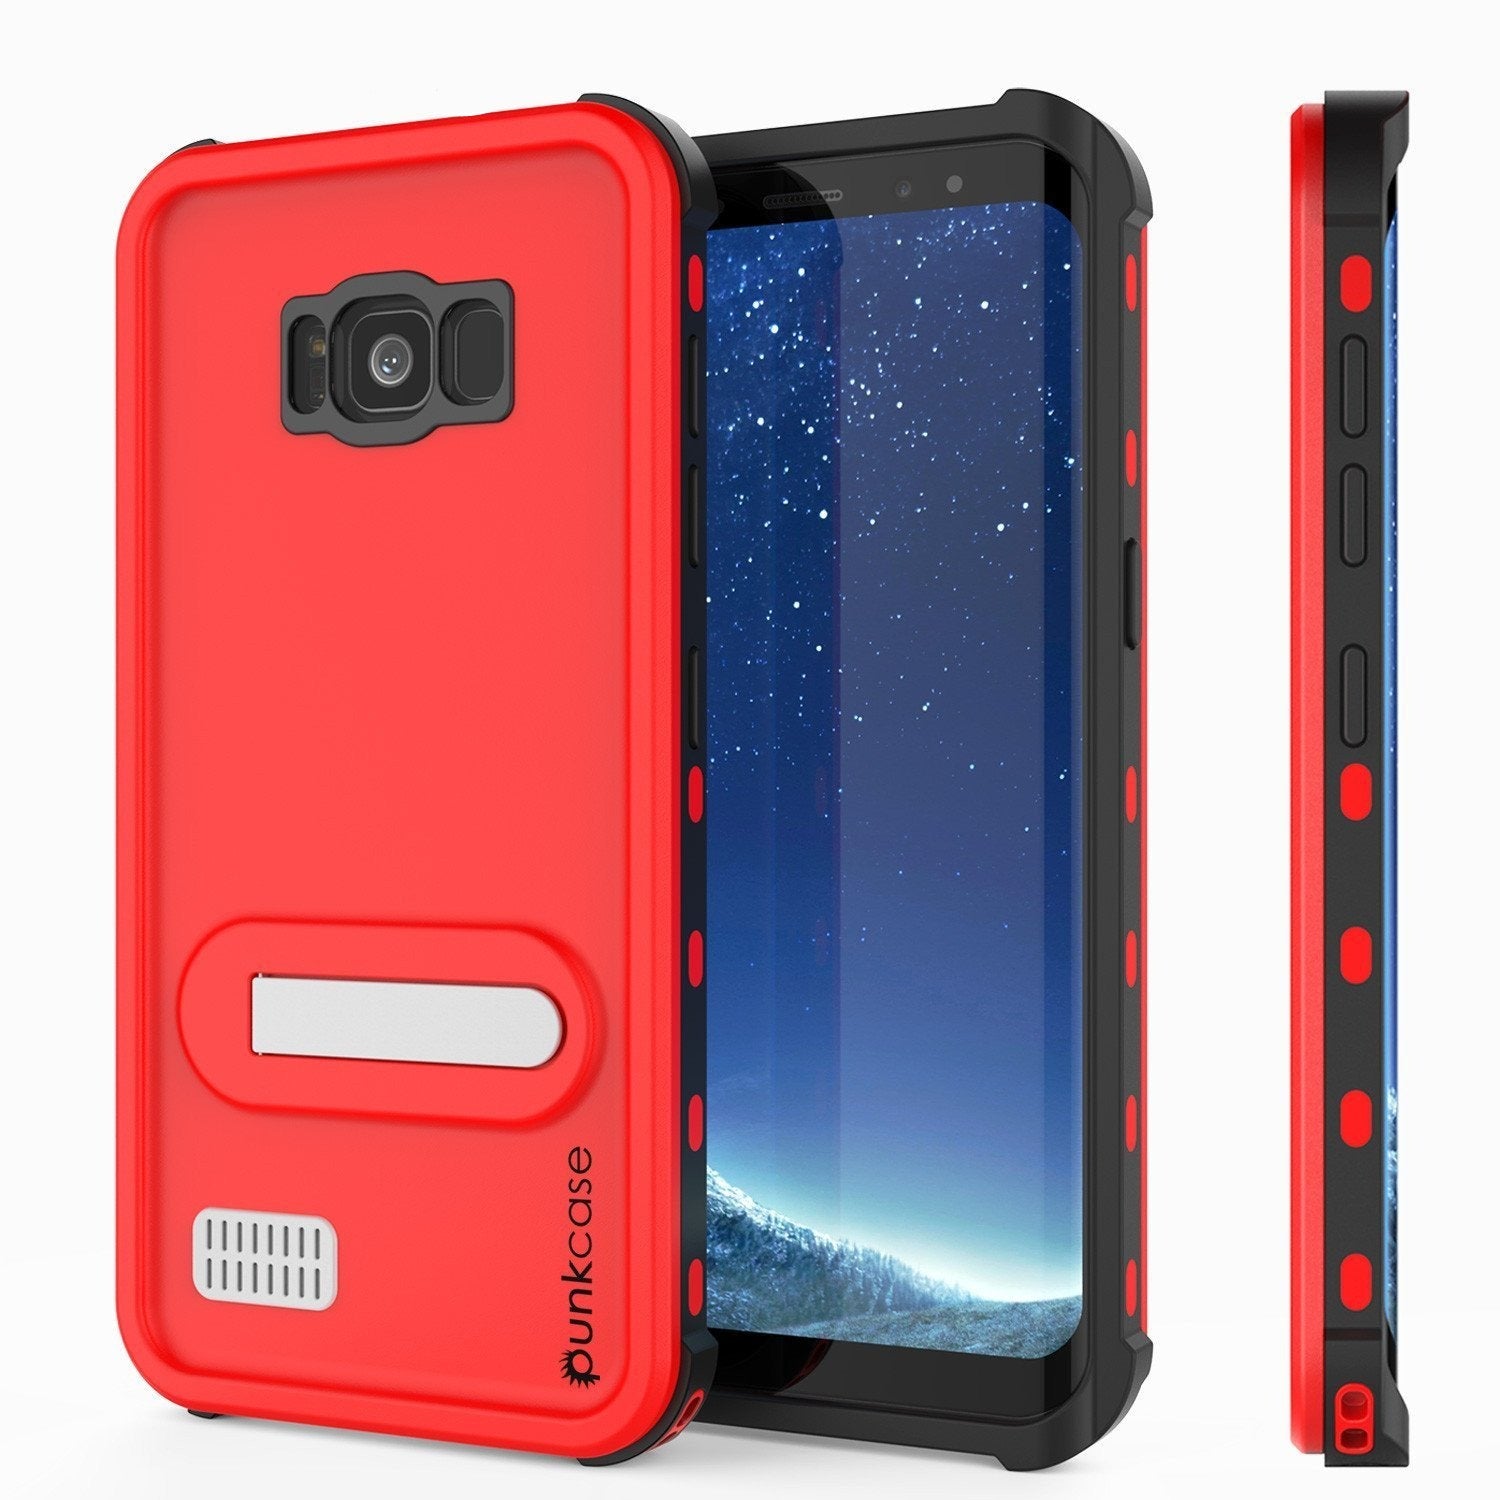 Protector [PURPLE]Galaxy S8 Waterproof Case, Punkcase [KickStud Series] [Slim Fit] [IP68 Certified] [Shockproof] [Snowproof] Armor Cover [Red]